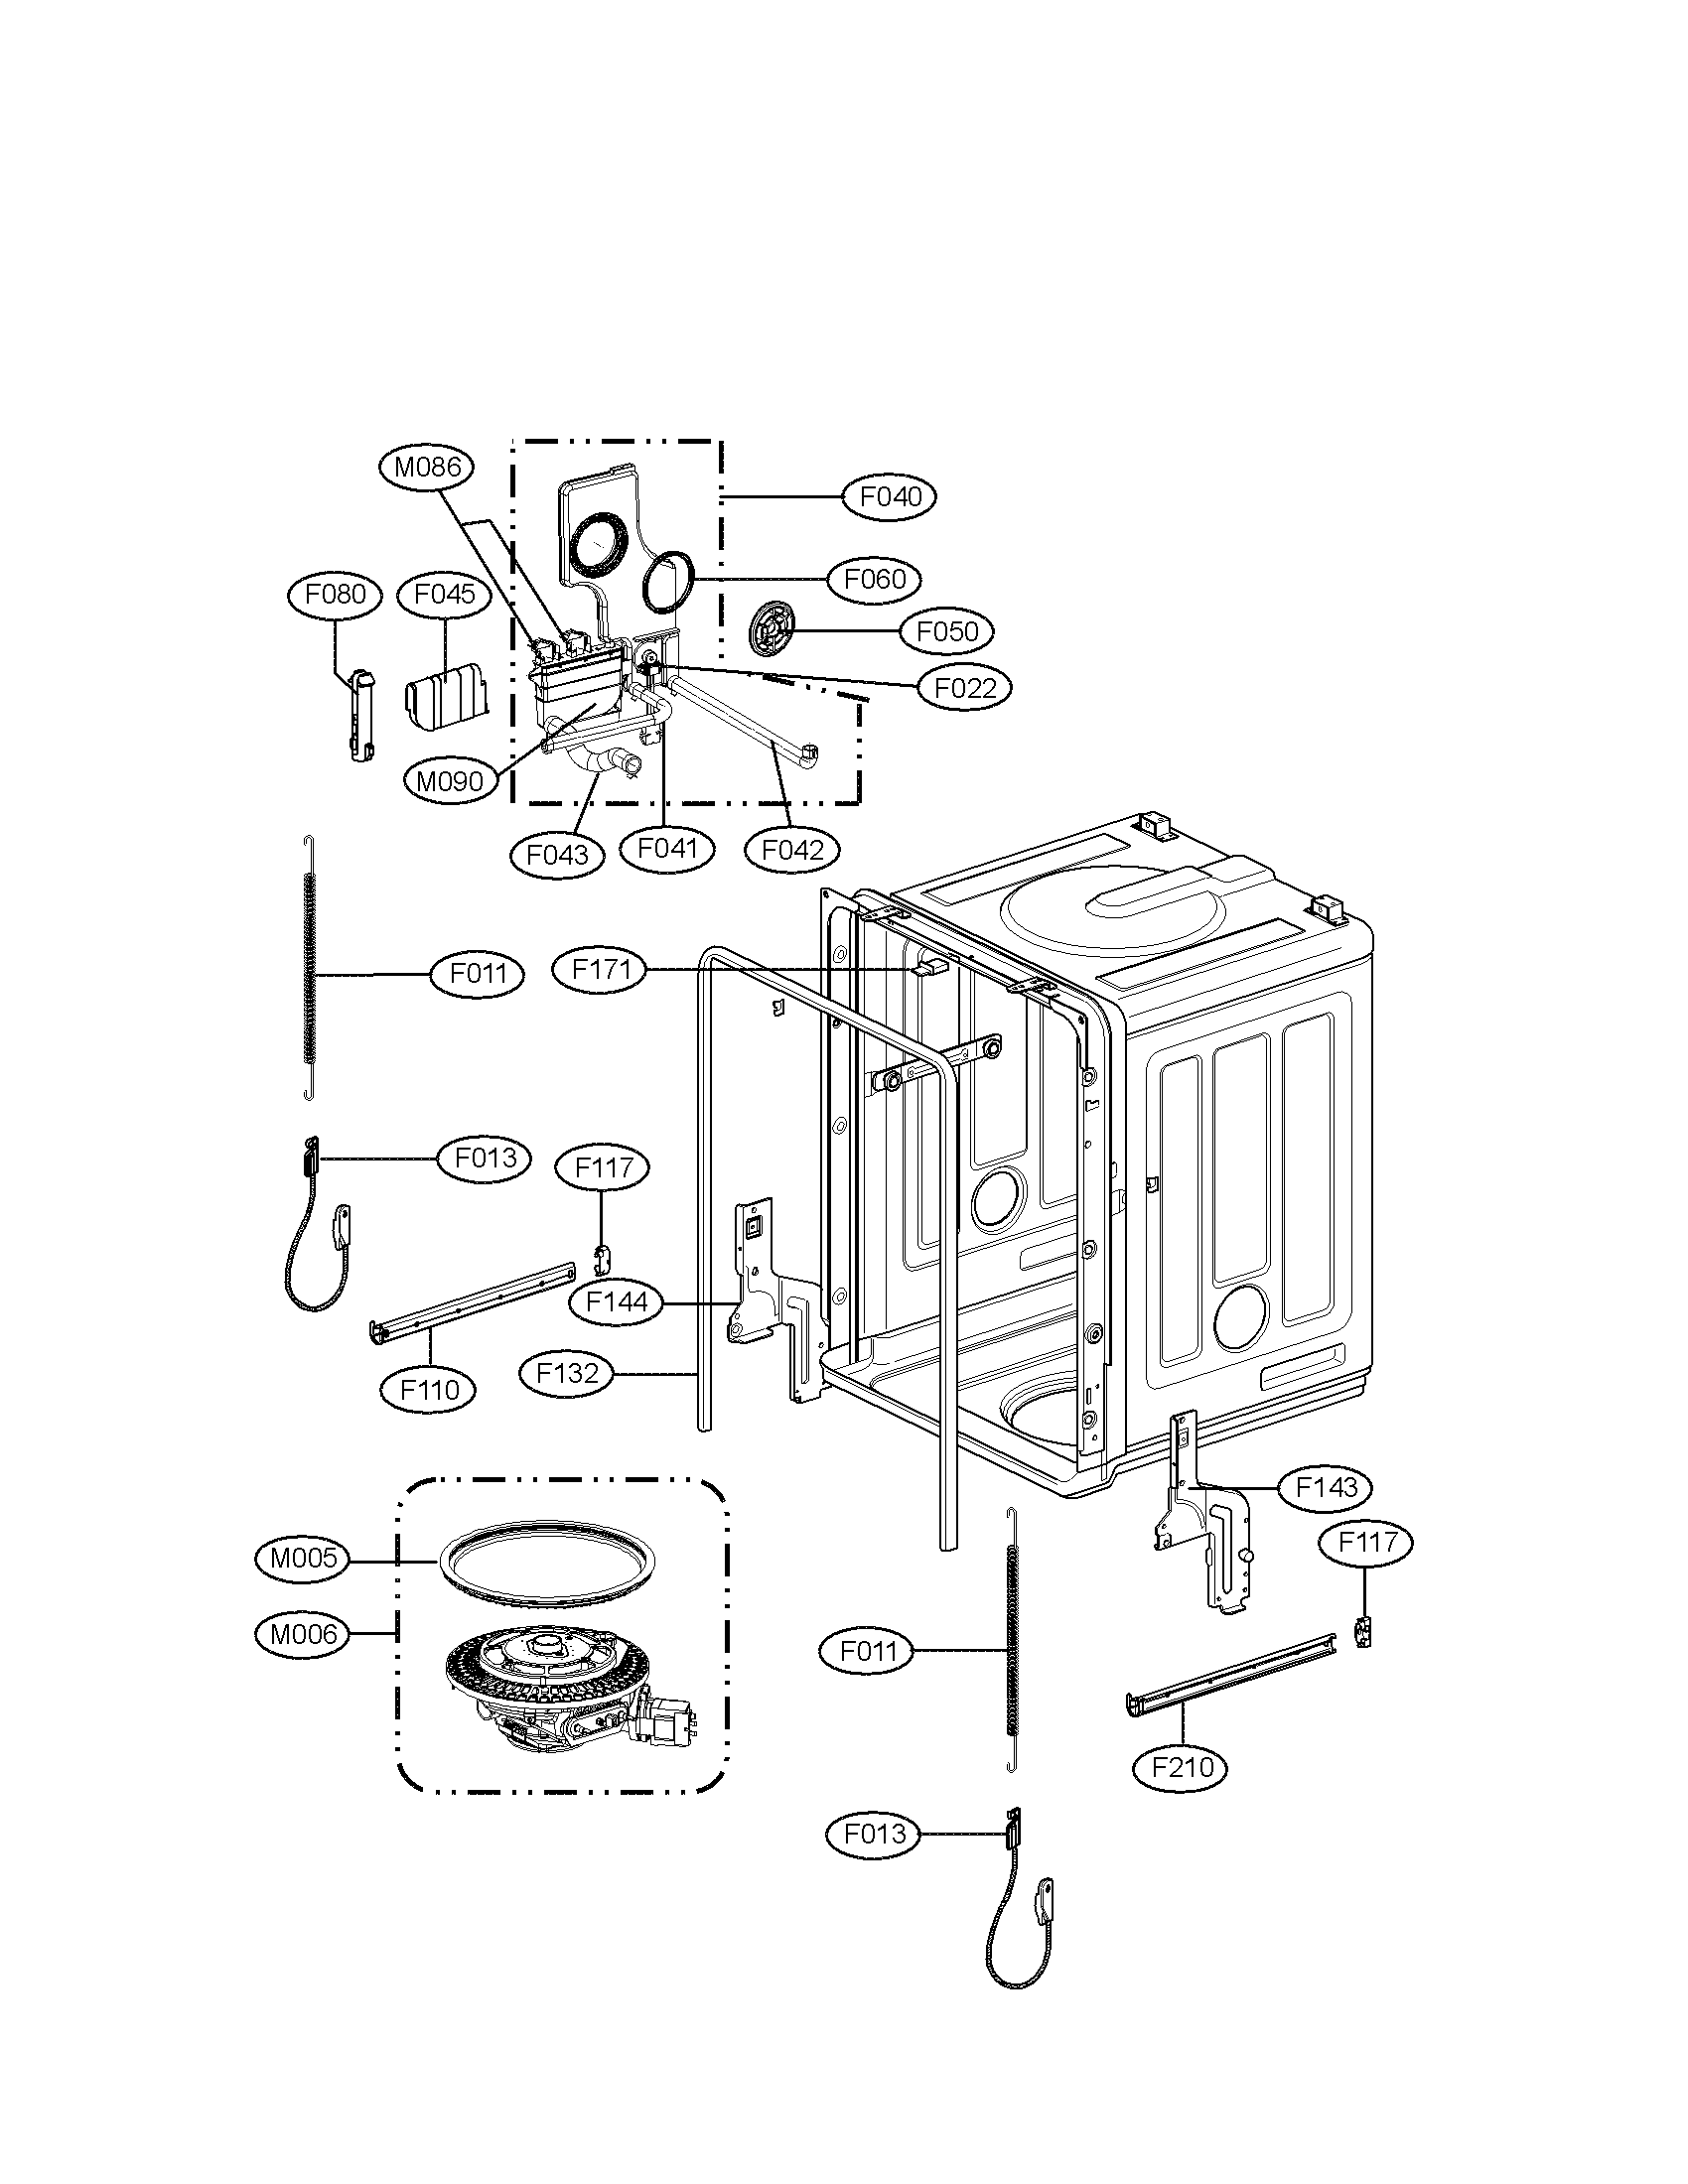 Lg Dishwasher Wiring Diagram Wiring Diagram For Lg Dishwasher schematic and wiring diagram